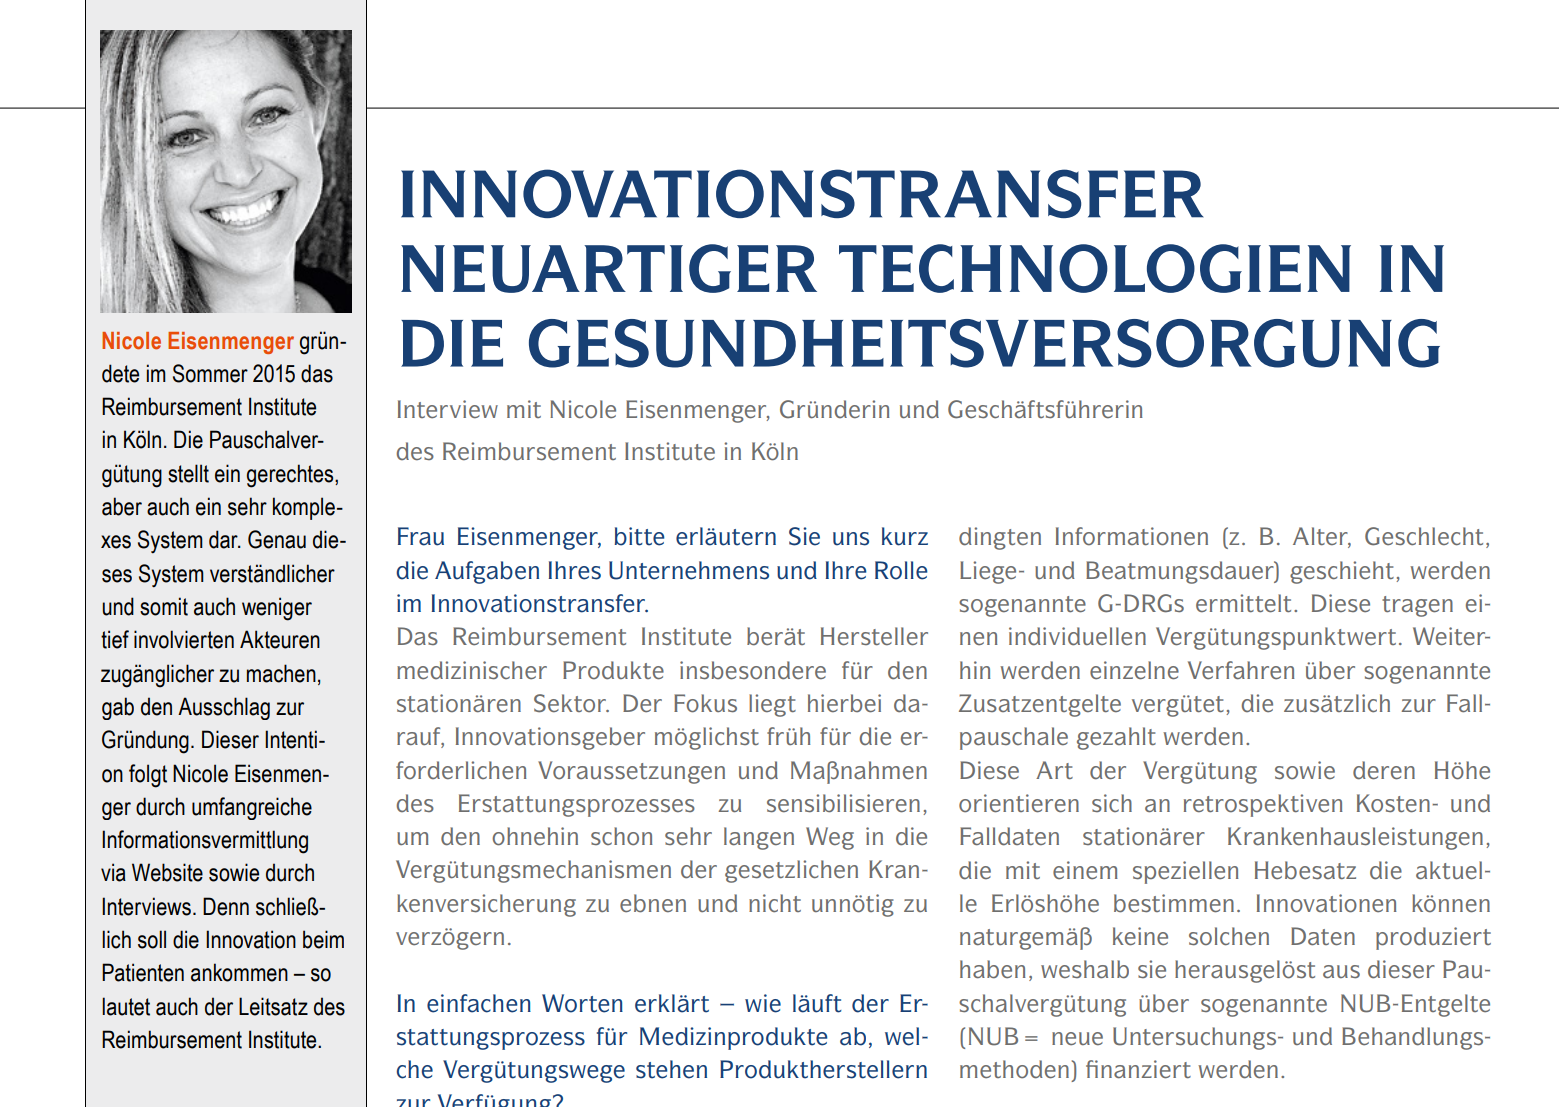 Ein Beitrag des Reimbursement Institute zum Thema "Innovationstransfer neuartiger Technologien in die Gesundheitsversorgung"